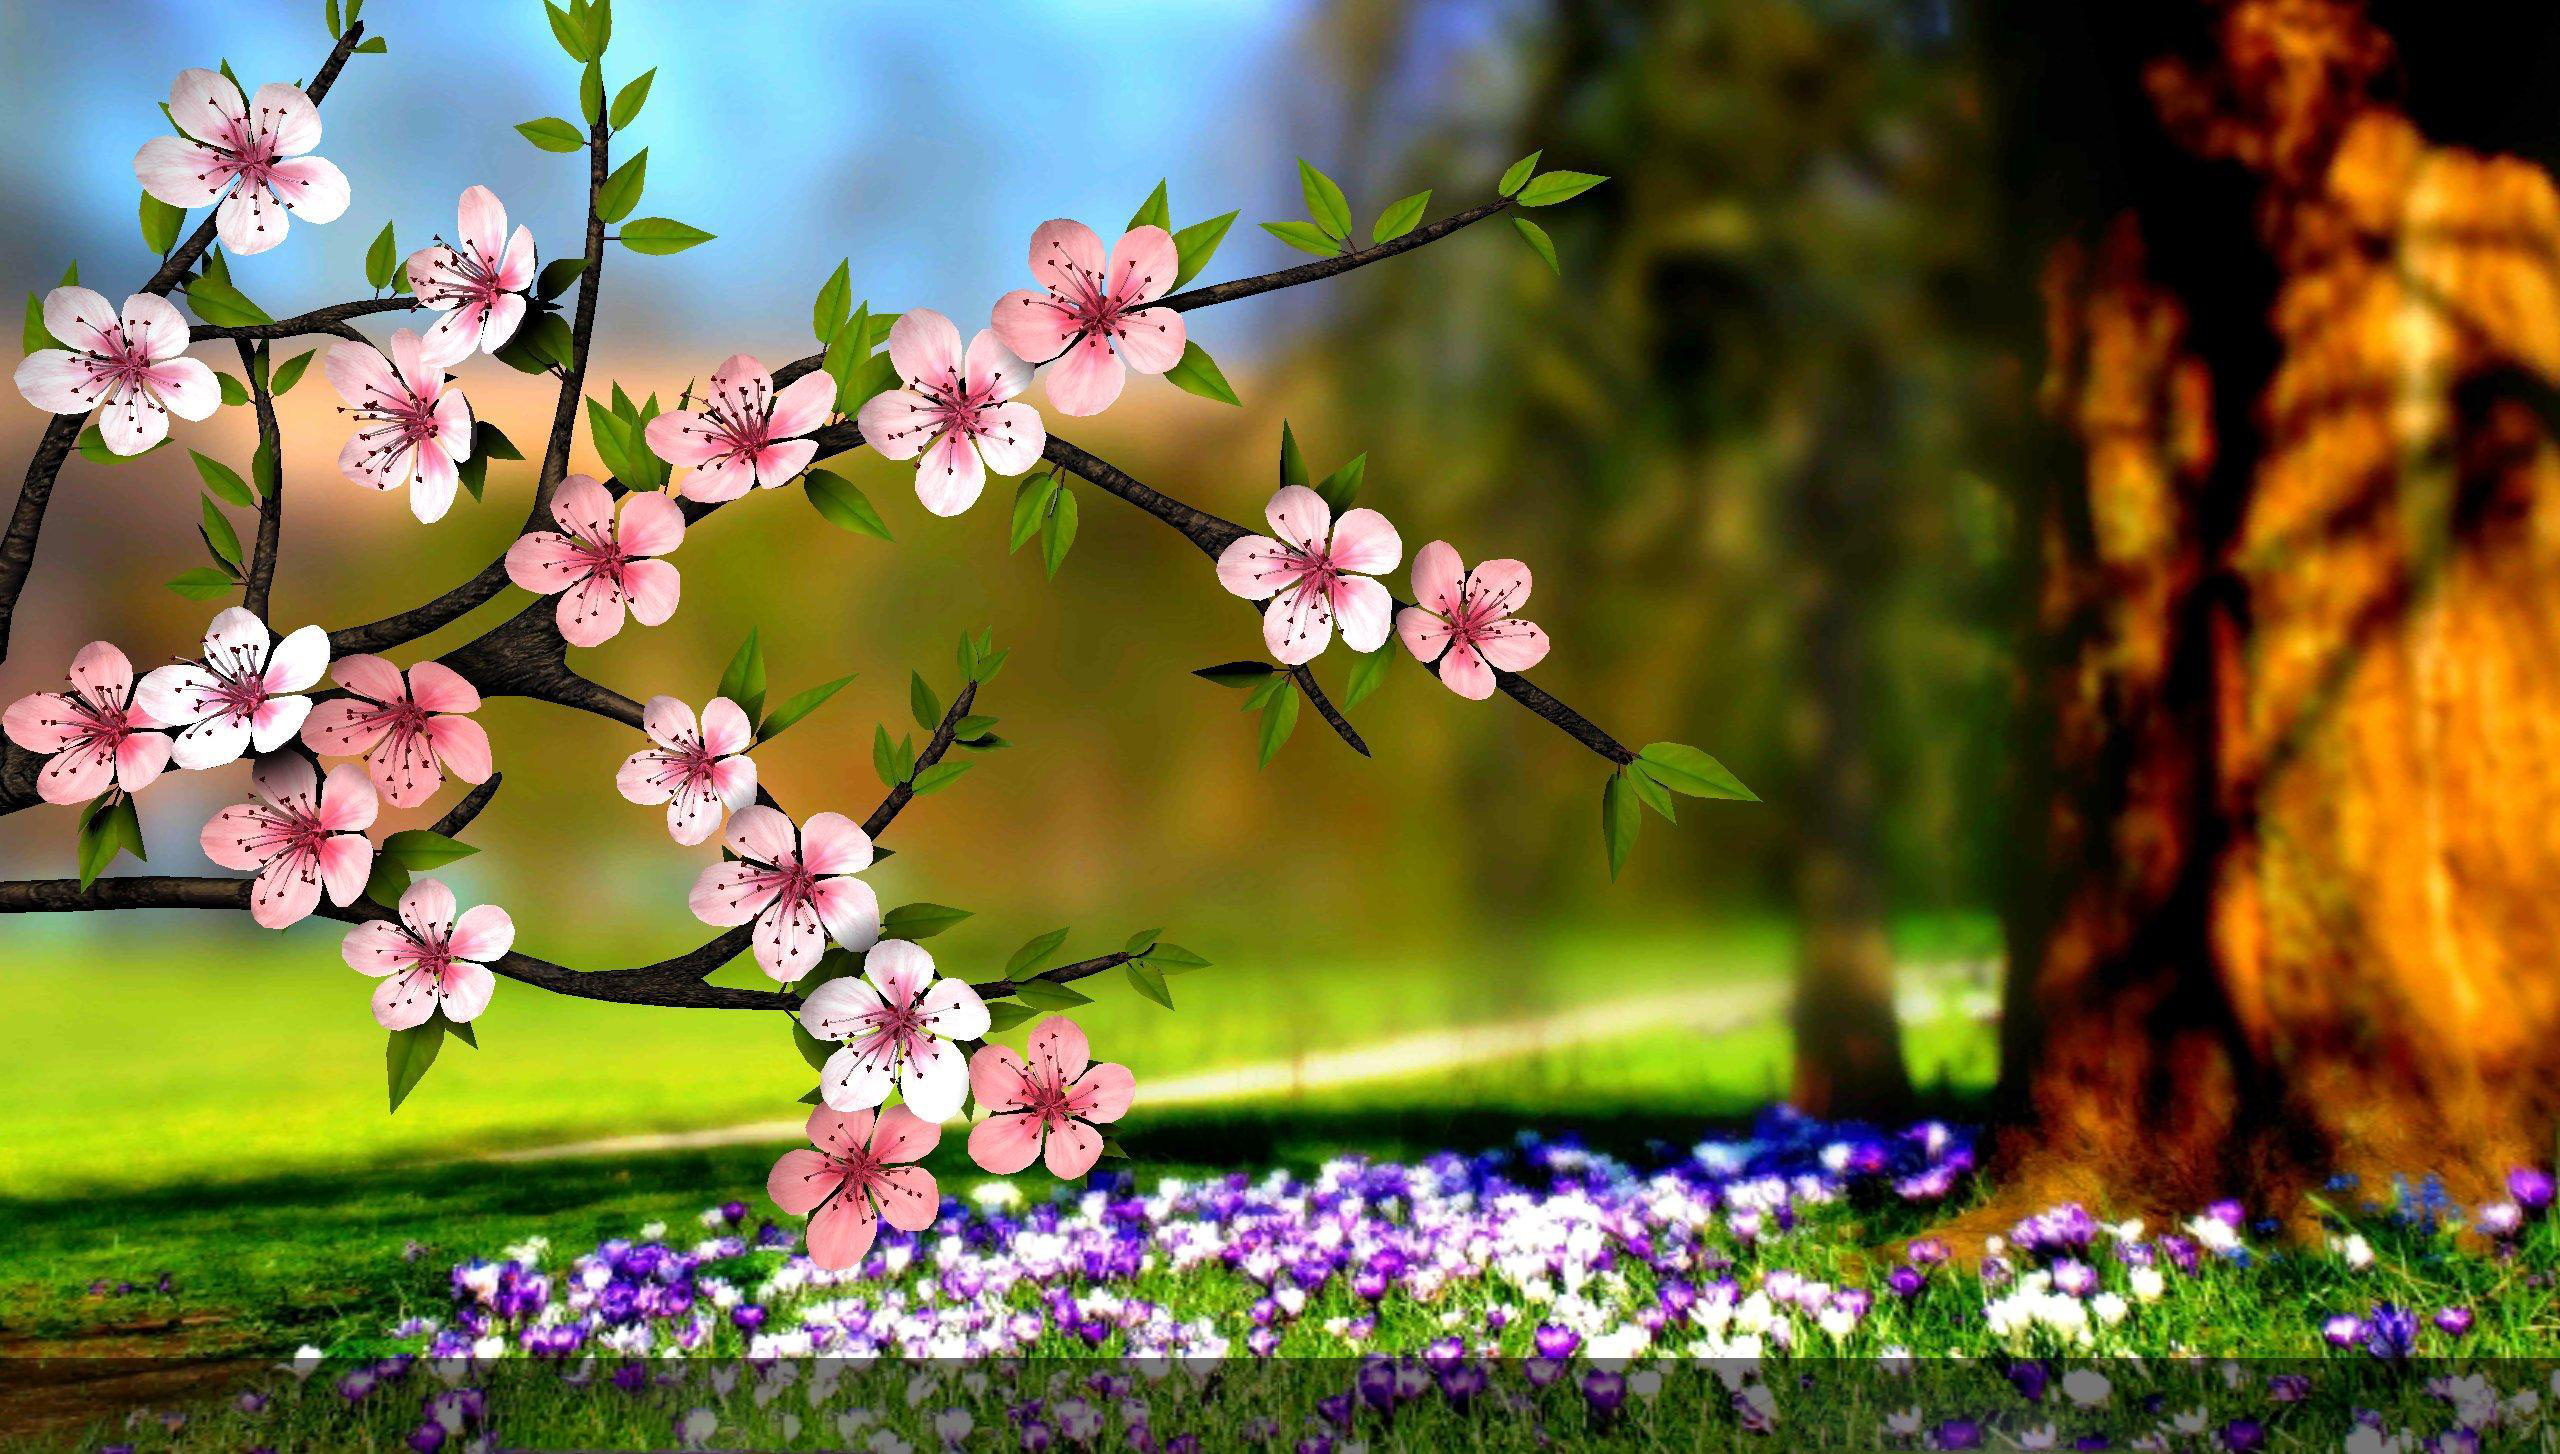 عکس طبیعت گل و شکوفه های بهاری زیبا در آغاز فصل بهار